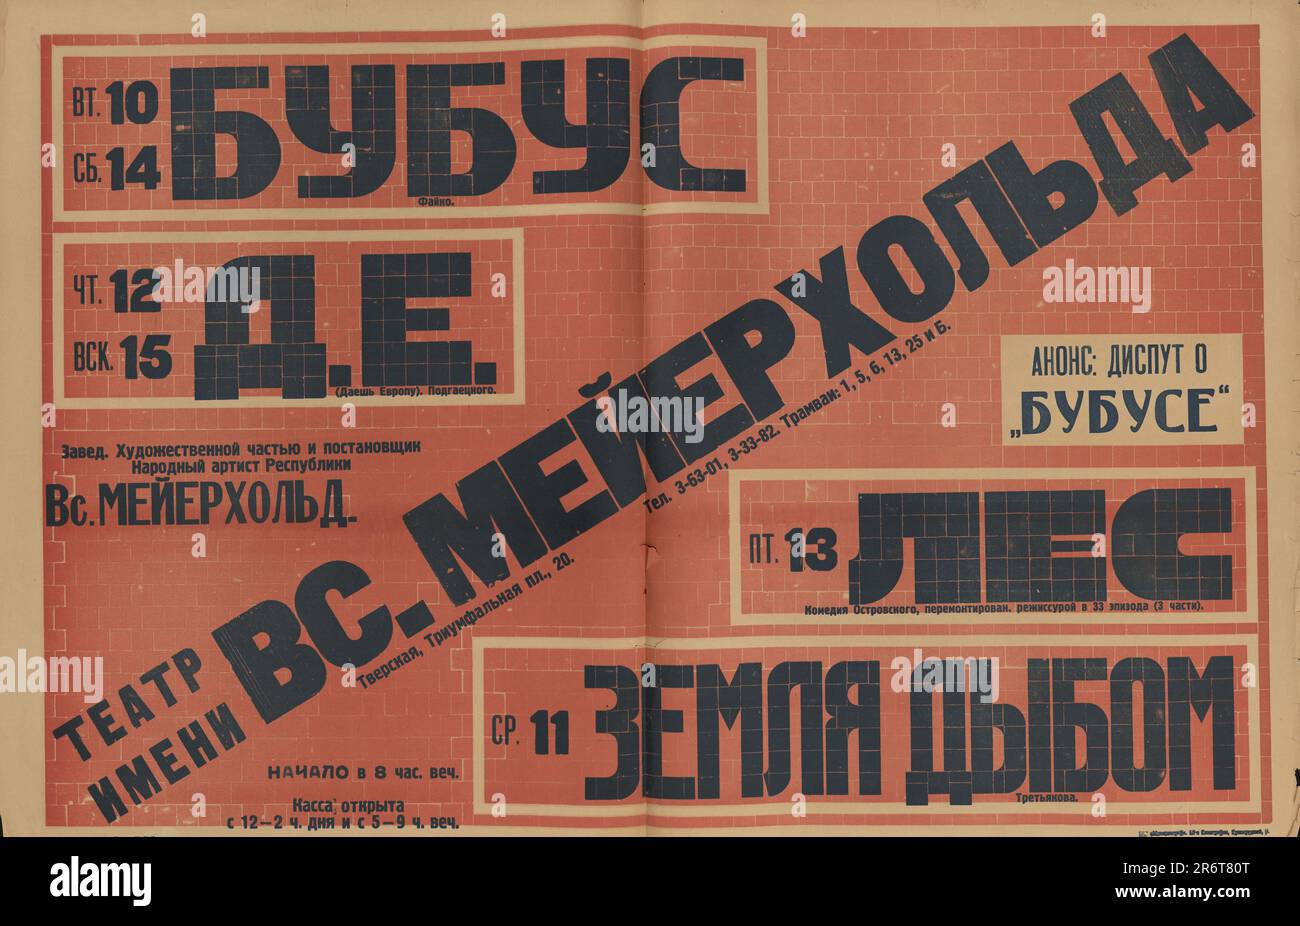 Poster del teatro 'Bubus', 'Trust D.E.', 'The Forest' e 'The World volted upside' (il teatro di Meyerhold). Museo: Museo del Teatro Statale Centrale A. Bakhrushin, Mosca. Autore: ANONIMO. Foto Stock